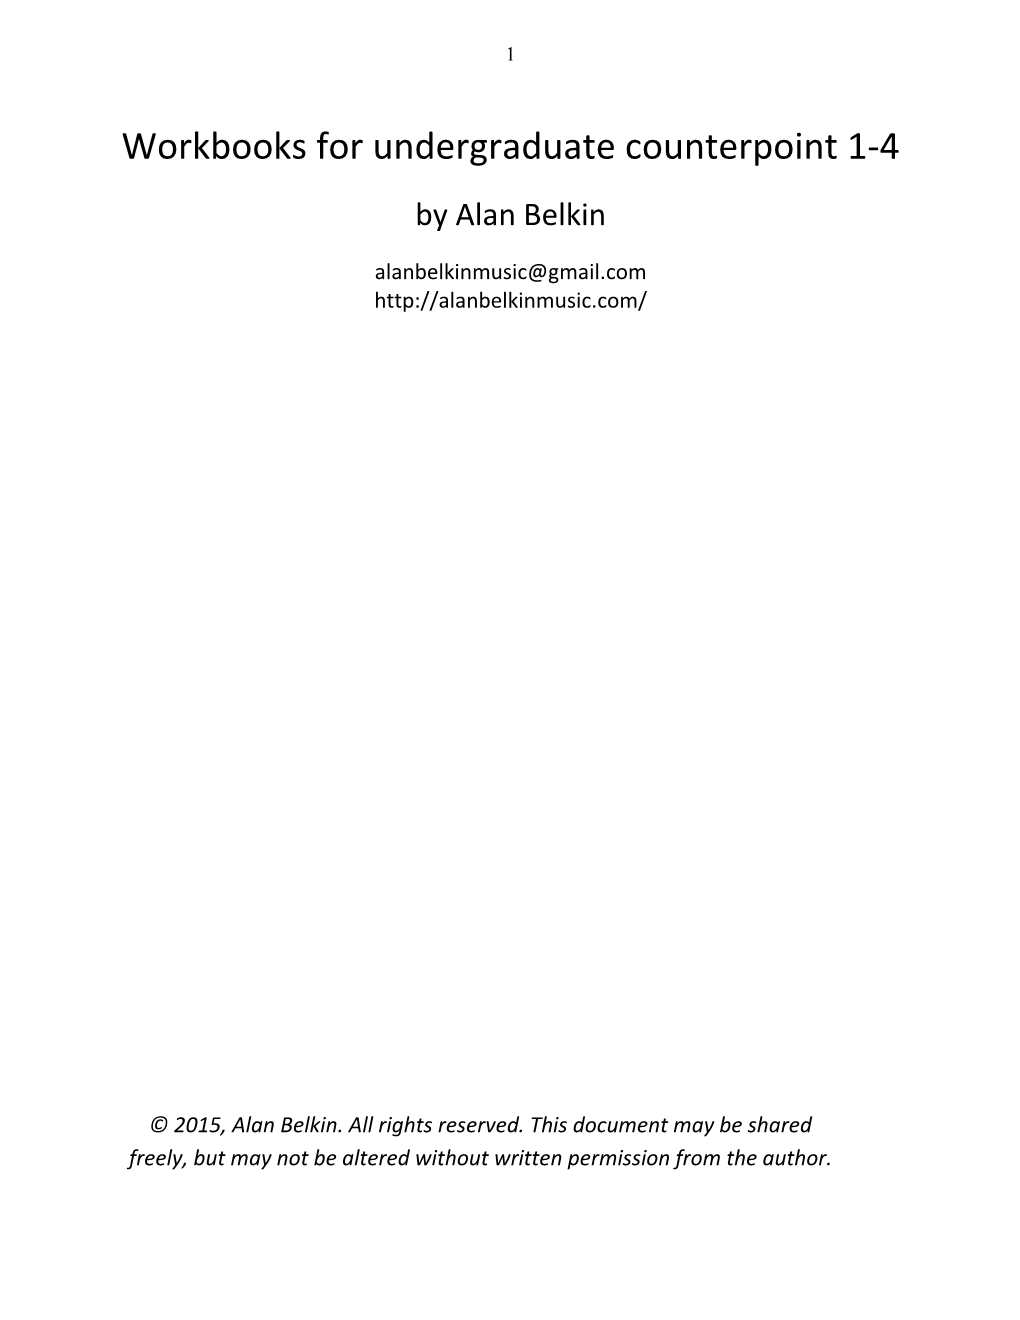 Workbooks for Undergraduate Counterpoint 1-4 by Alan Belkin